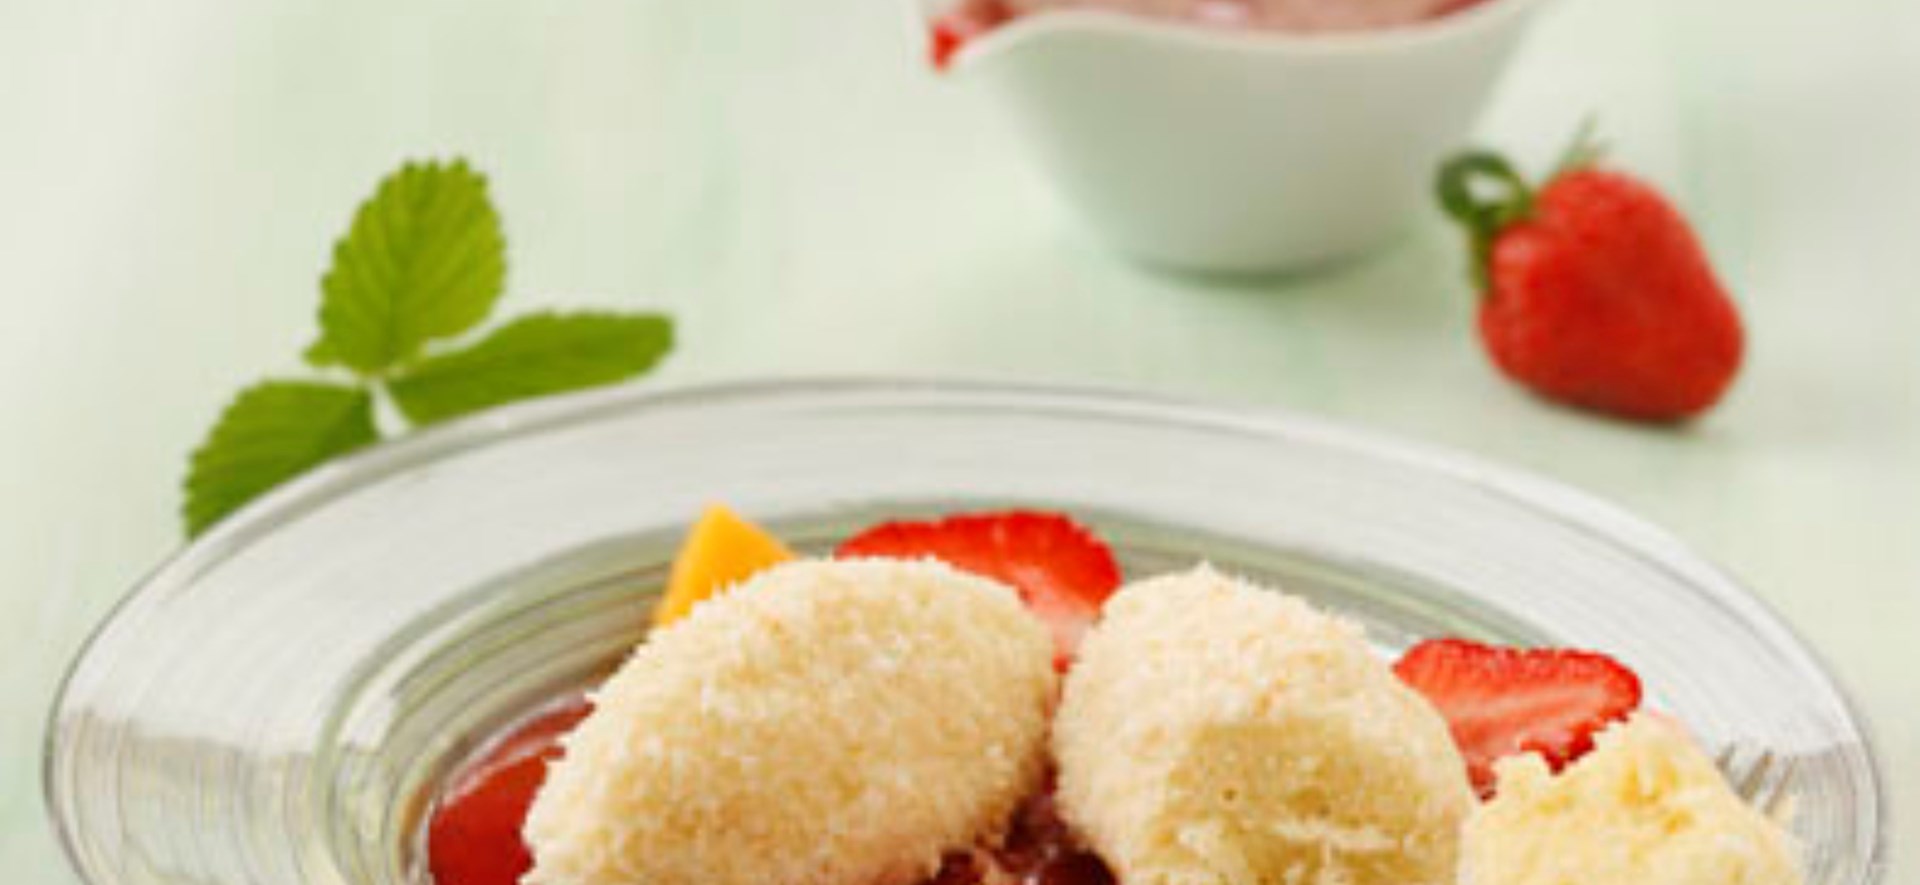 Bild zu Kokos-Grießnockerl mit Erdbeer-Mango-Salat